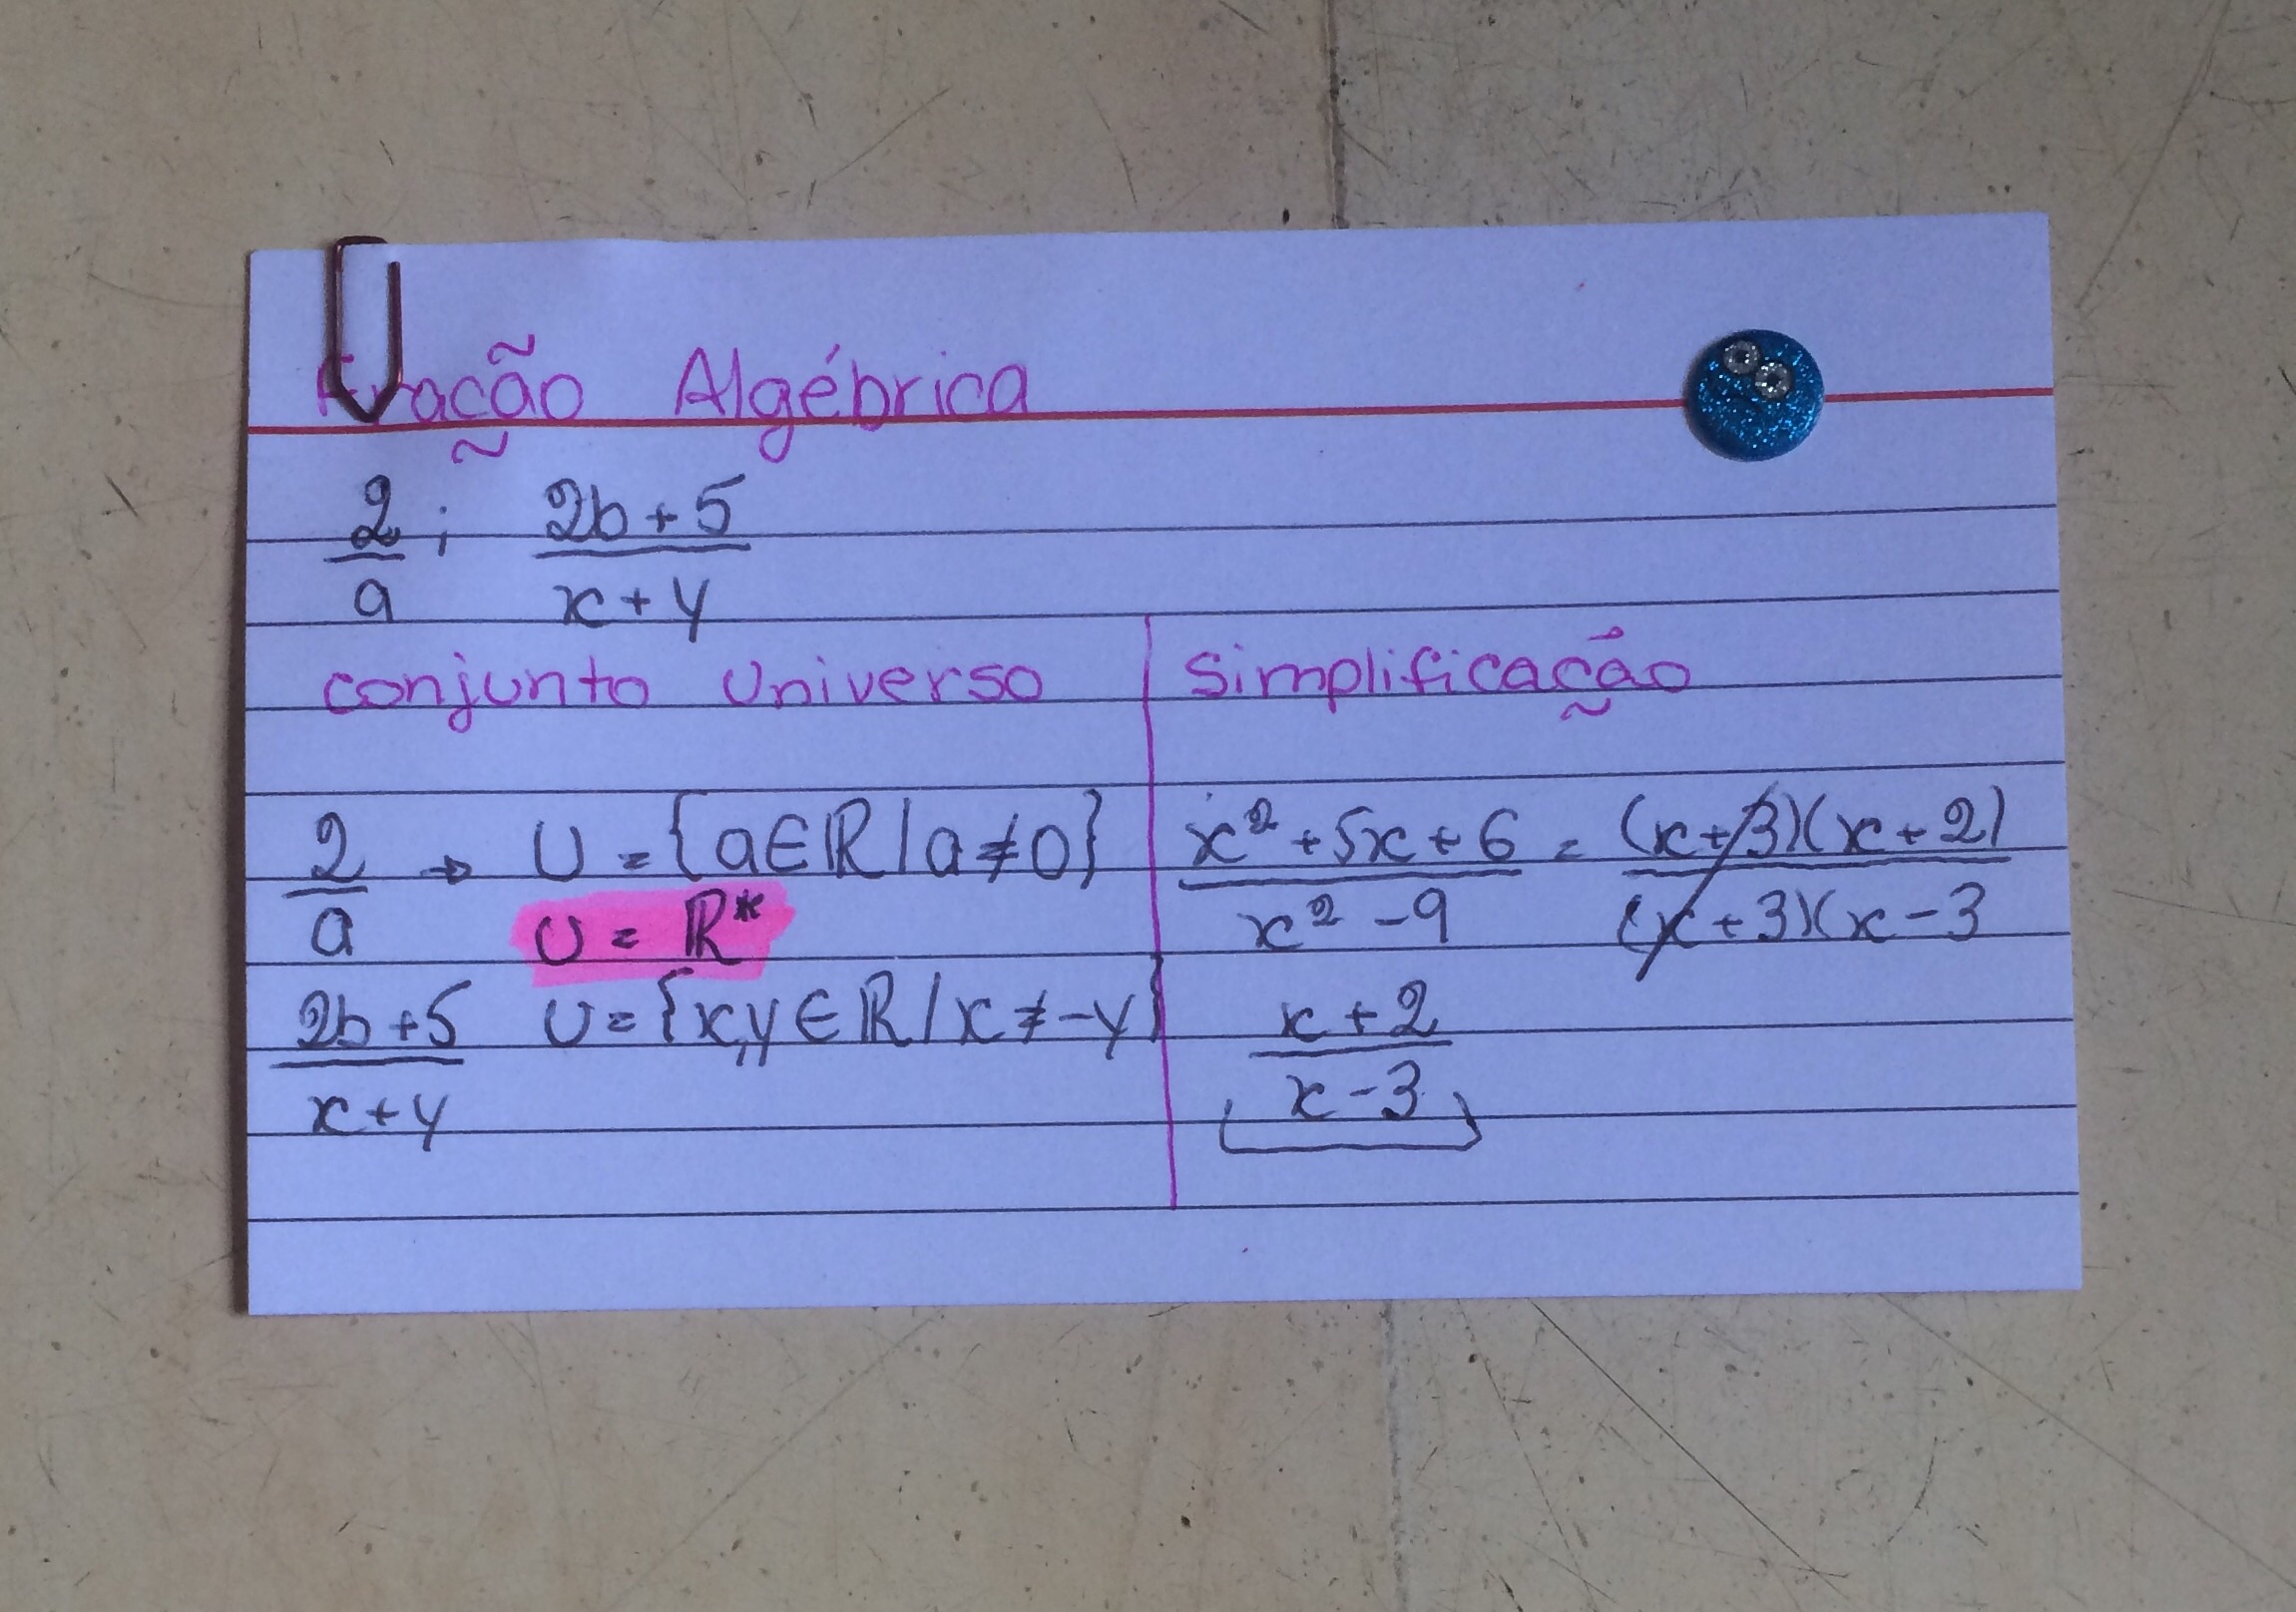 2-) Voce pode usar seus conhecimentos de fatoração para simplificar frações  algébricas. Faças as 